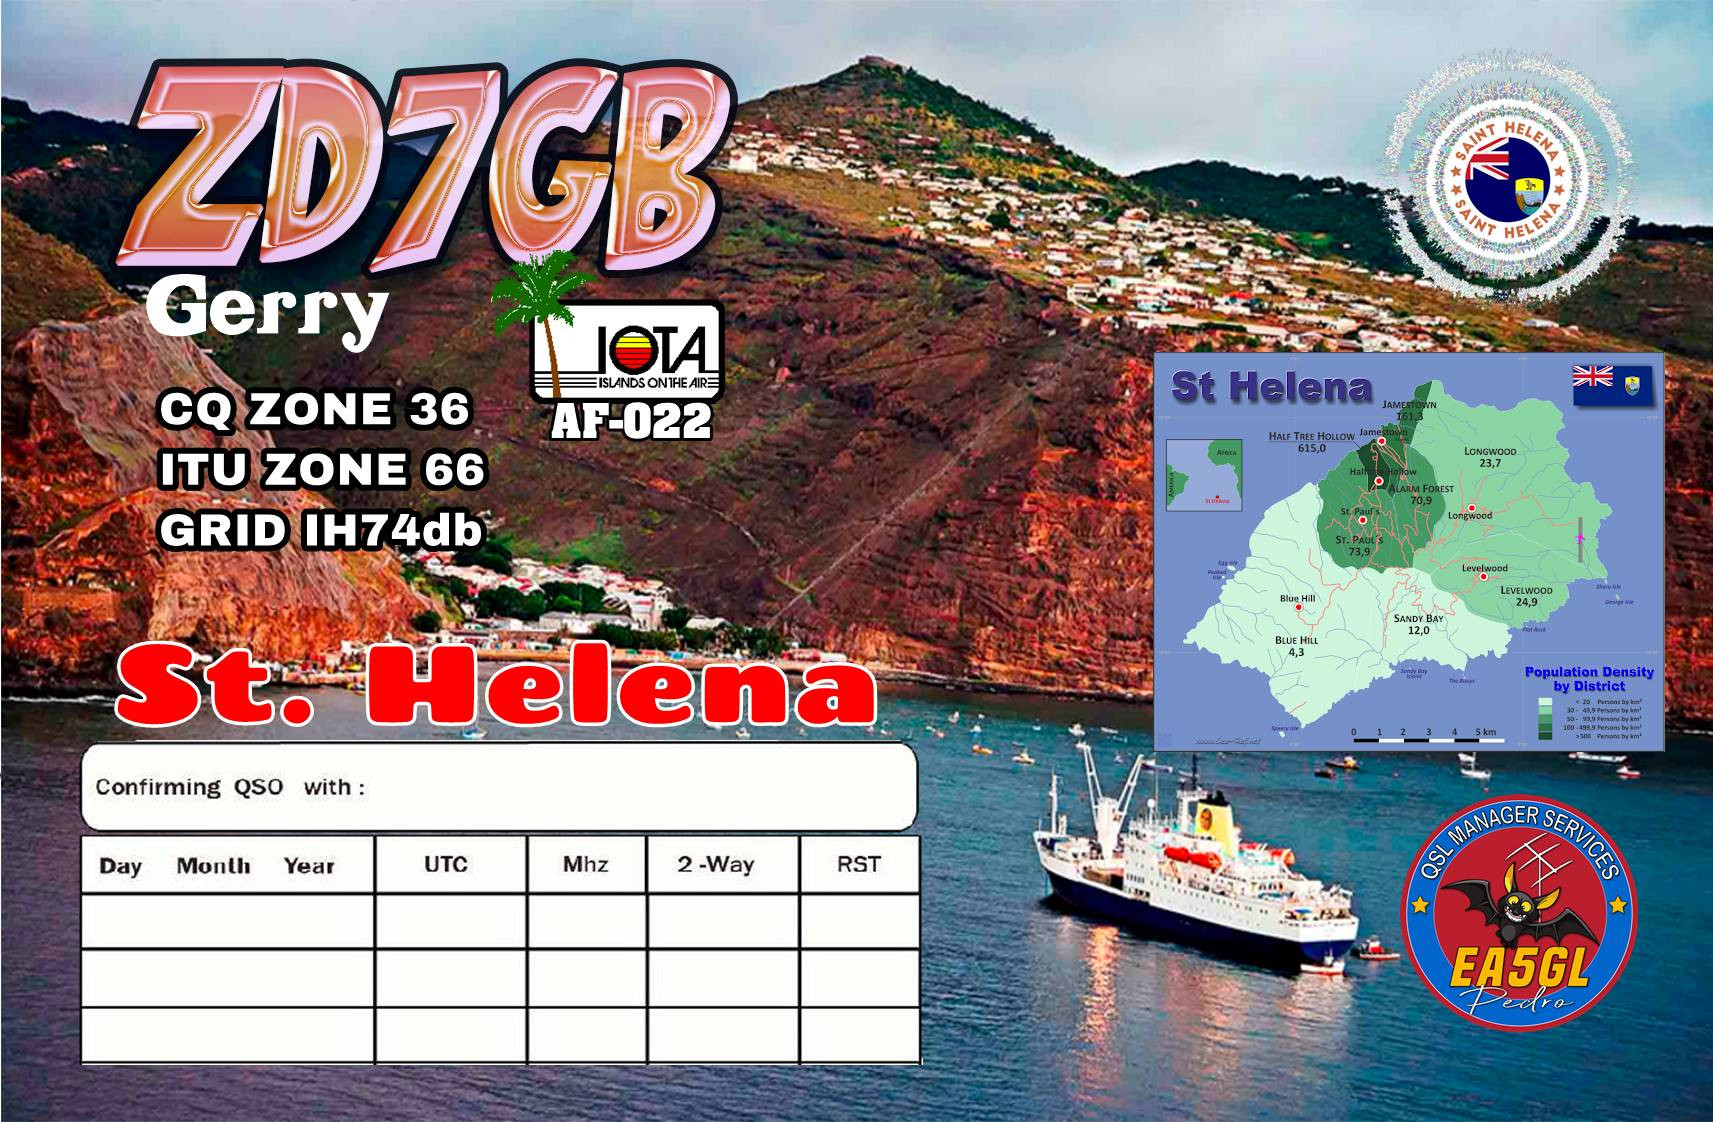 ZD7GB Saint Helena Island QSL 2